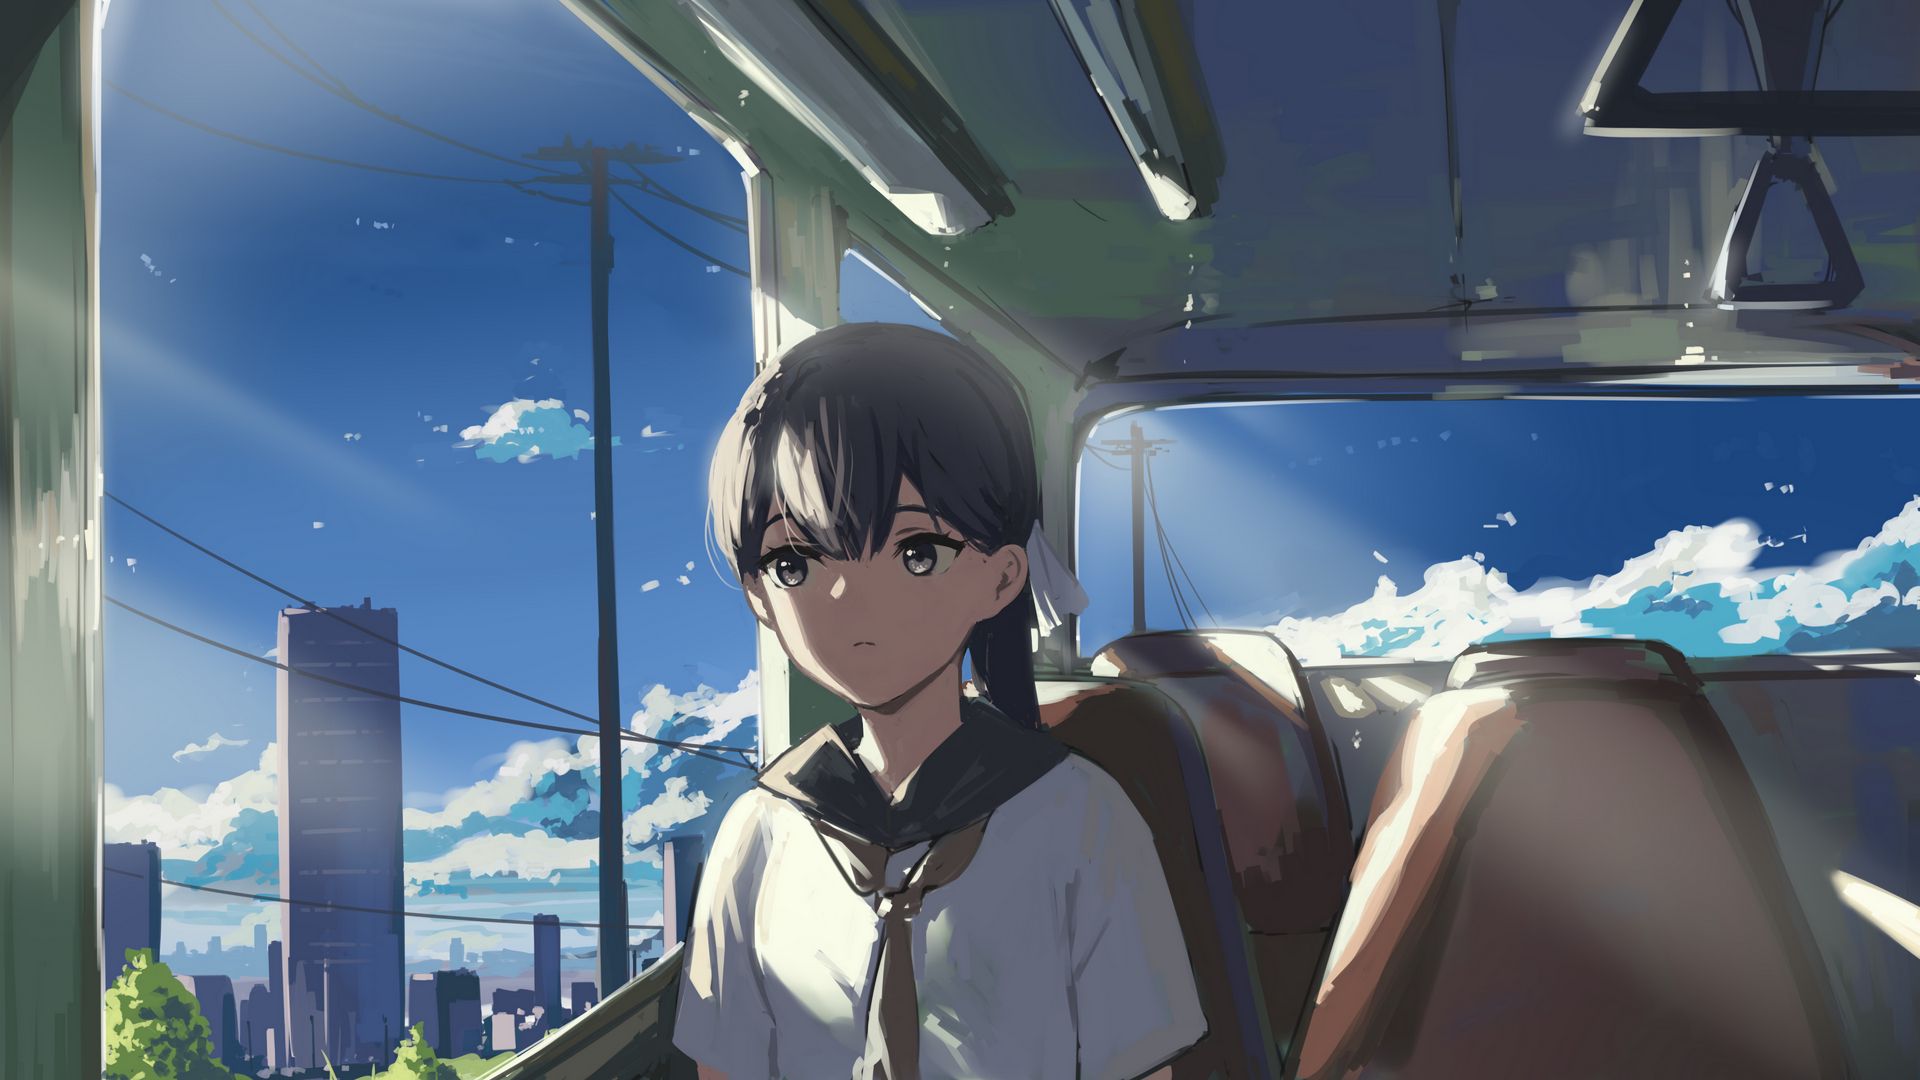 Inside a train #anime #train #manga | Anime, Manga vs anime, Anime images